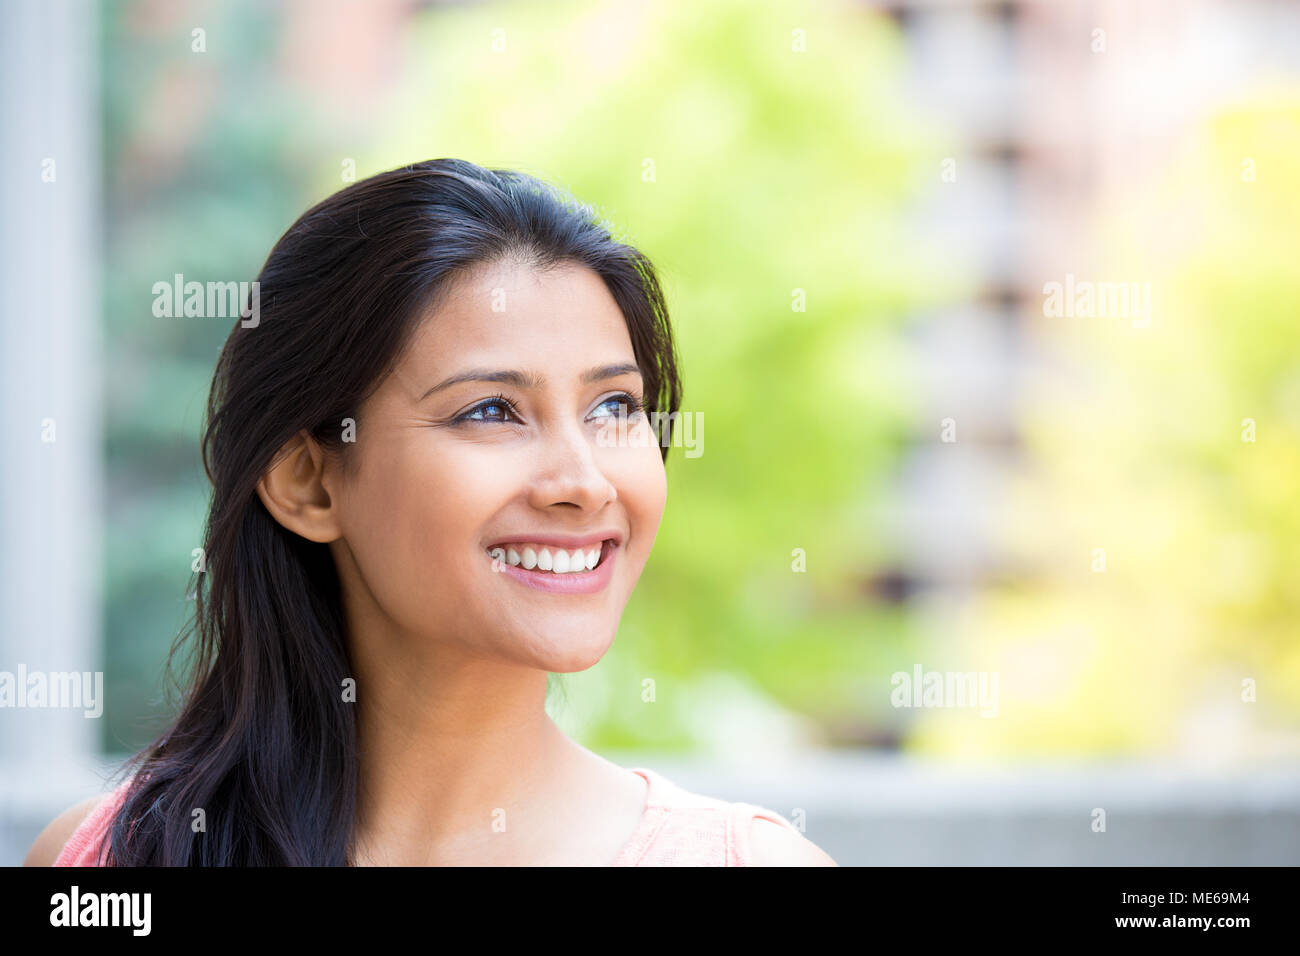 Closeup portrait portrait, souriant, joyeux, heureux jeune femme regardant vers le haut à rêver de belles choses, isolé à l'extérieur du bâtiment, ensoleillée. P Banque D'Images